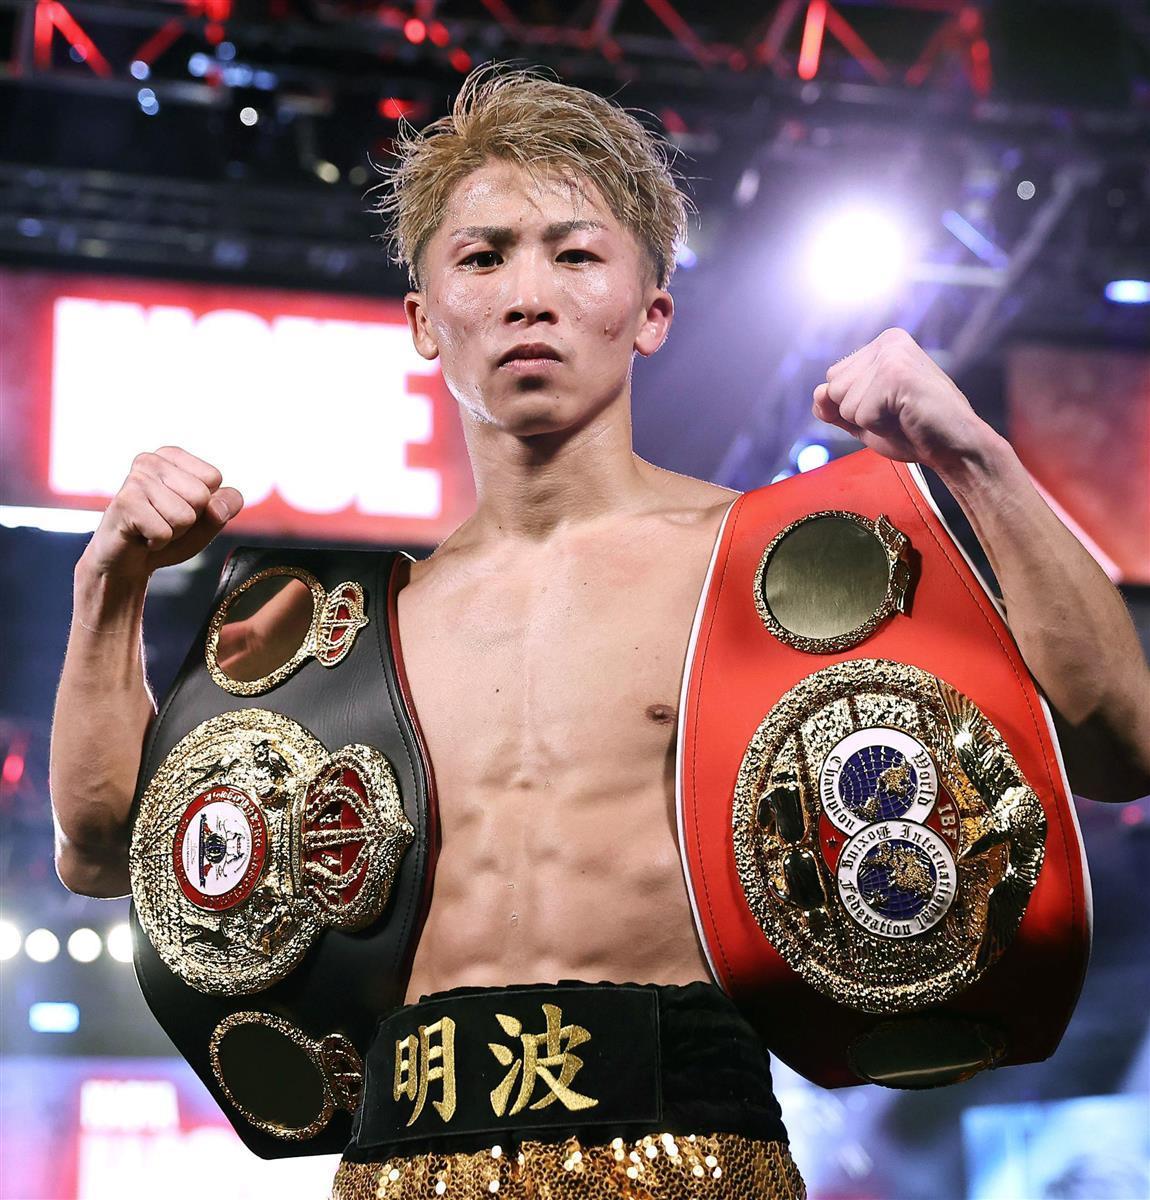 ボクシング世界WBAチャンピオンベルト レプリカ - 武道、格闘技